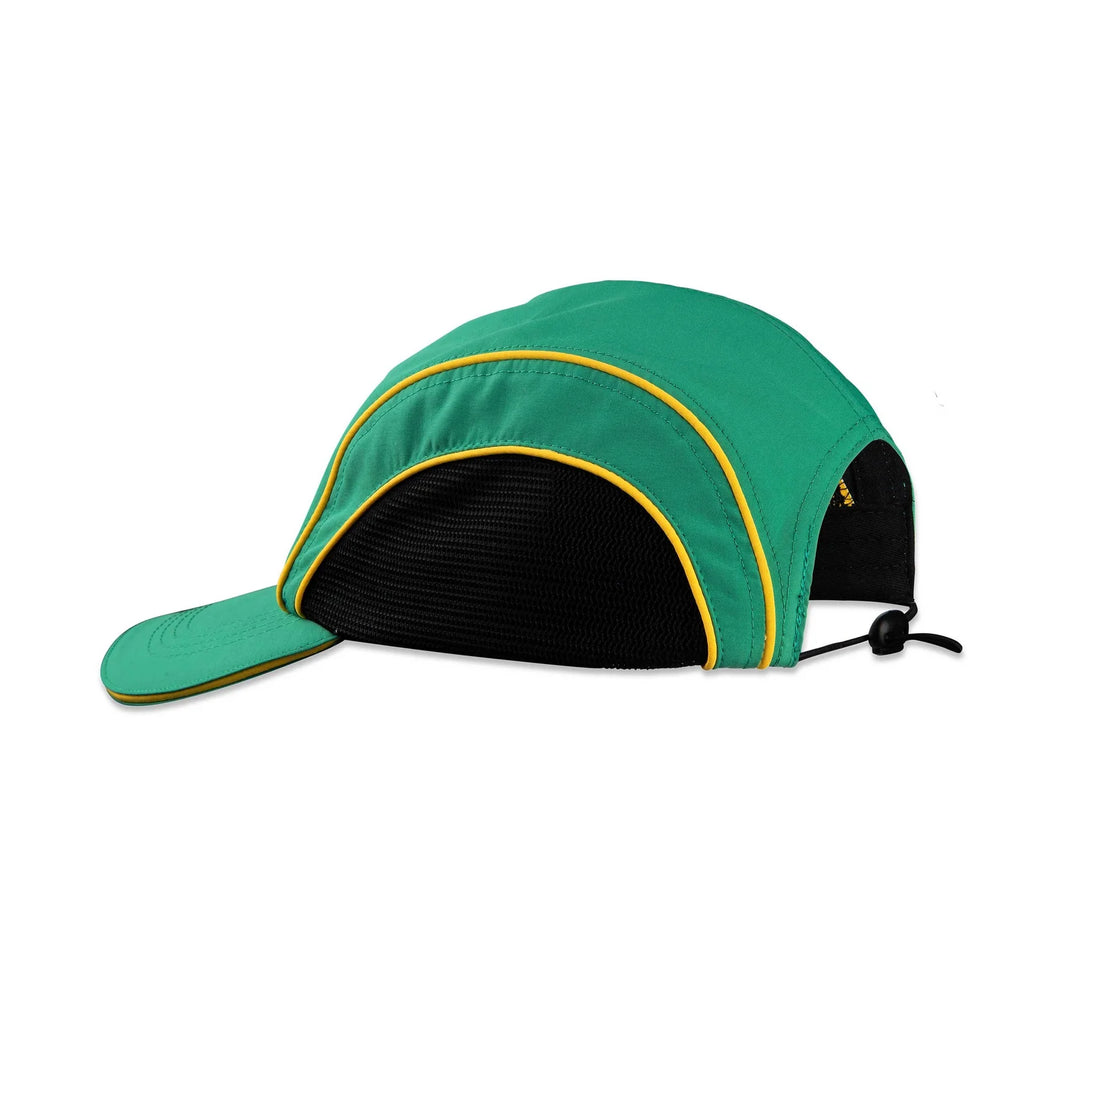 THE GREEN CAP